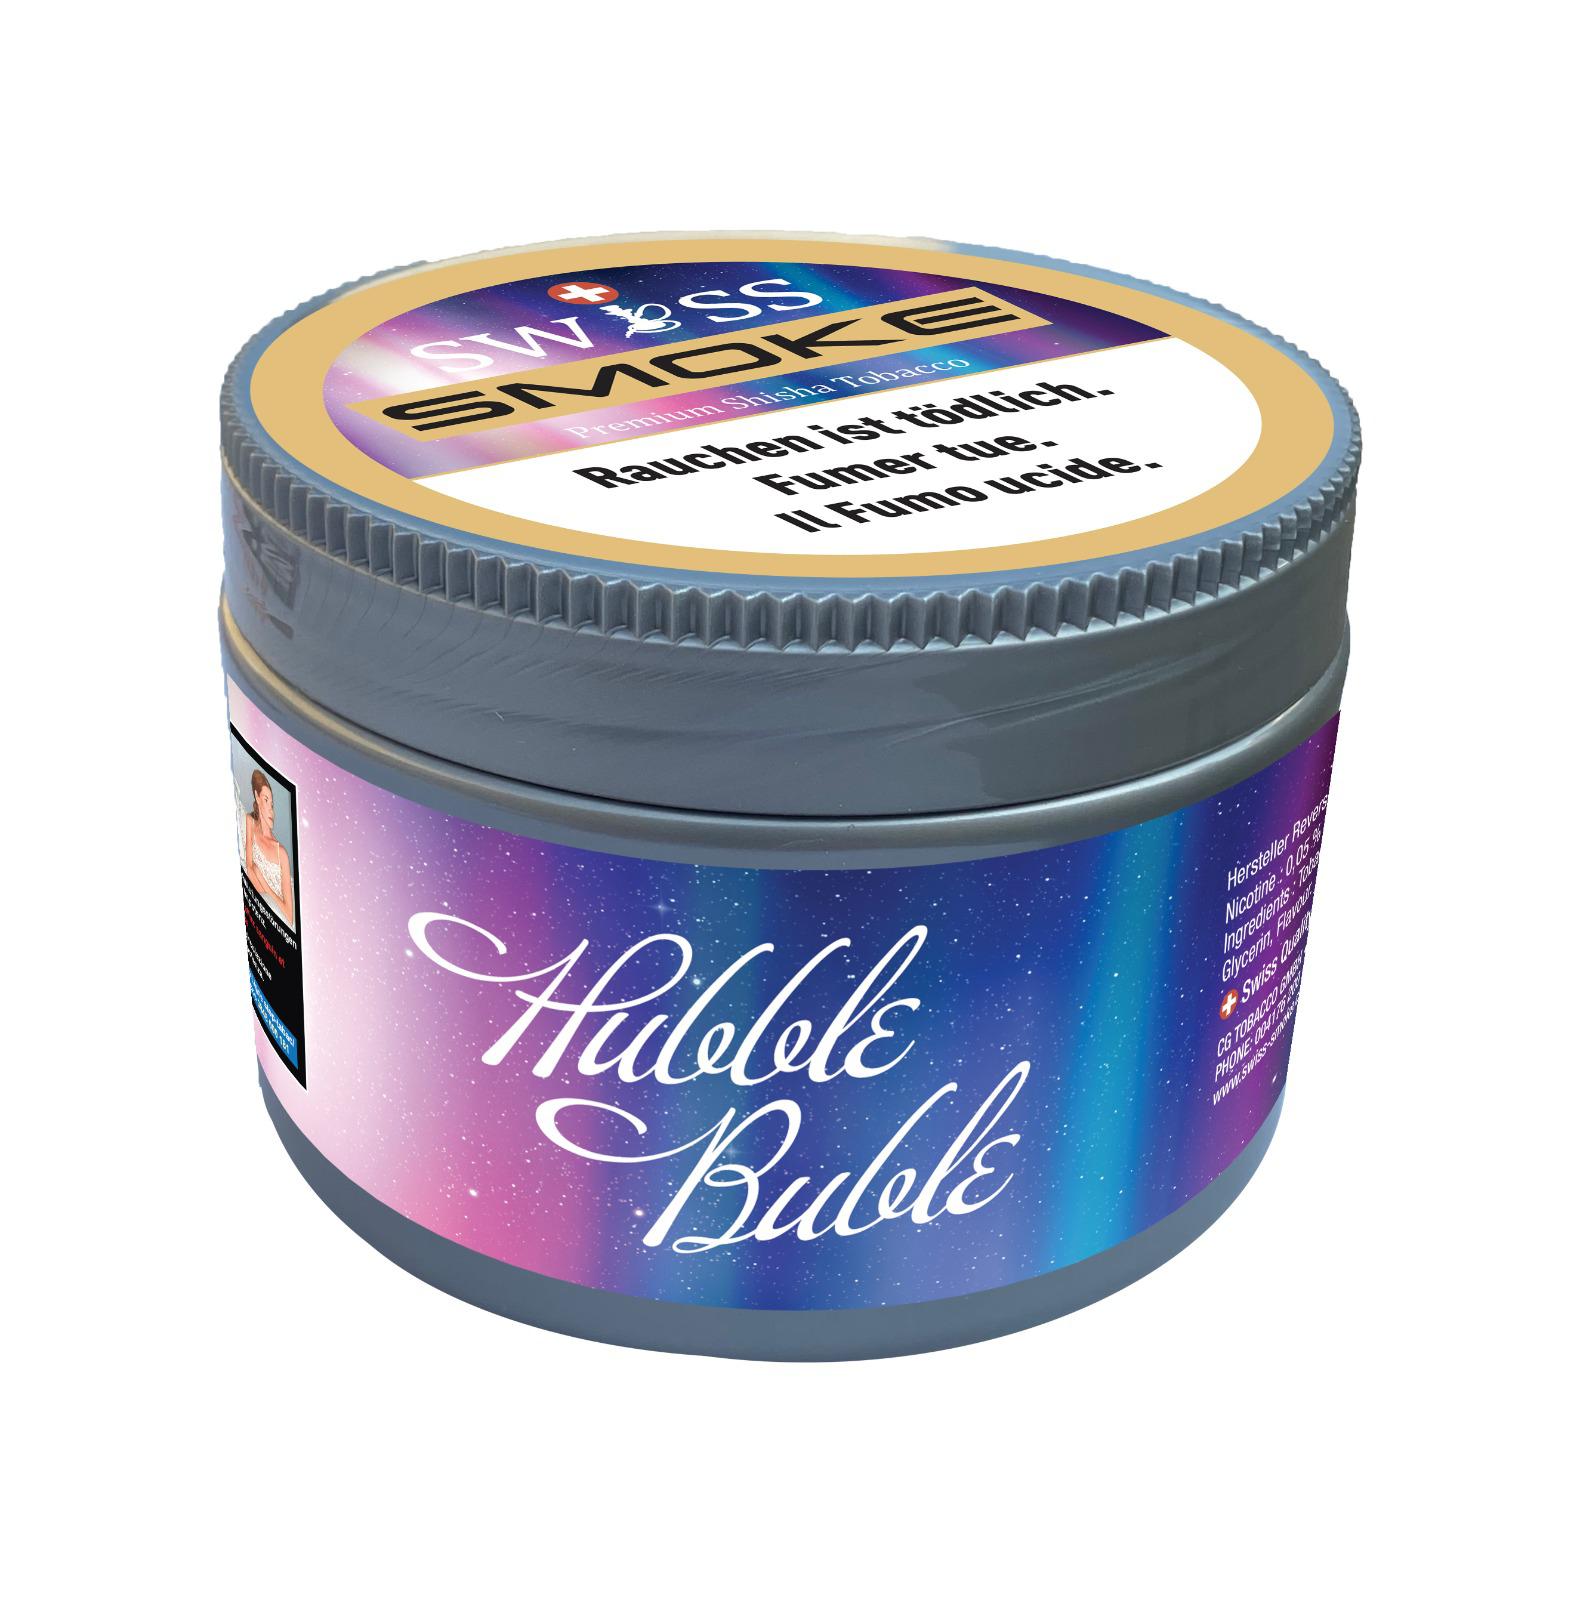 Hubble Buble 100g